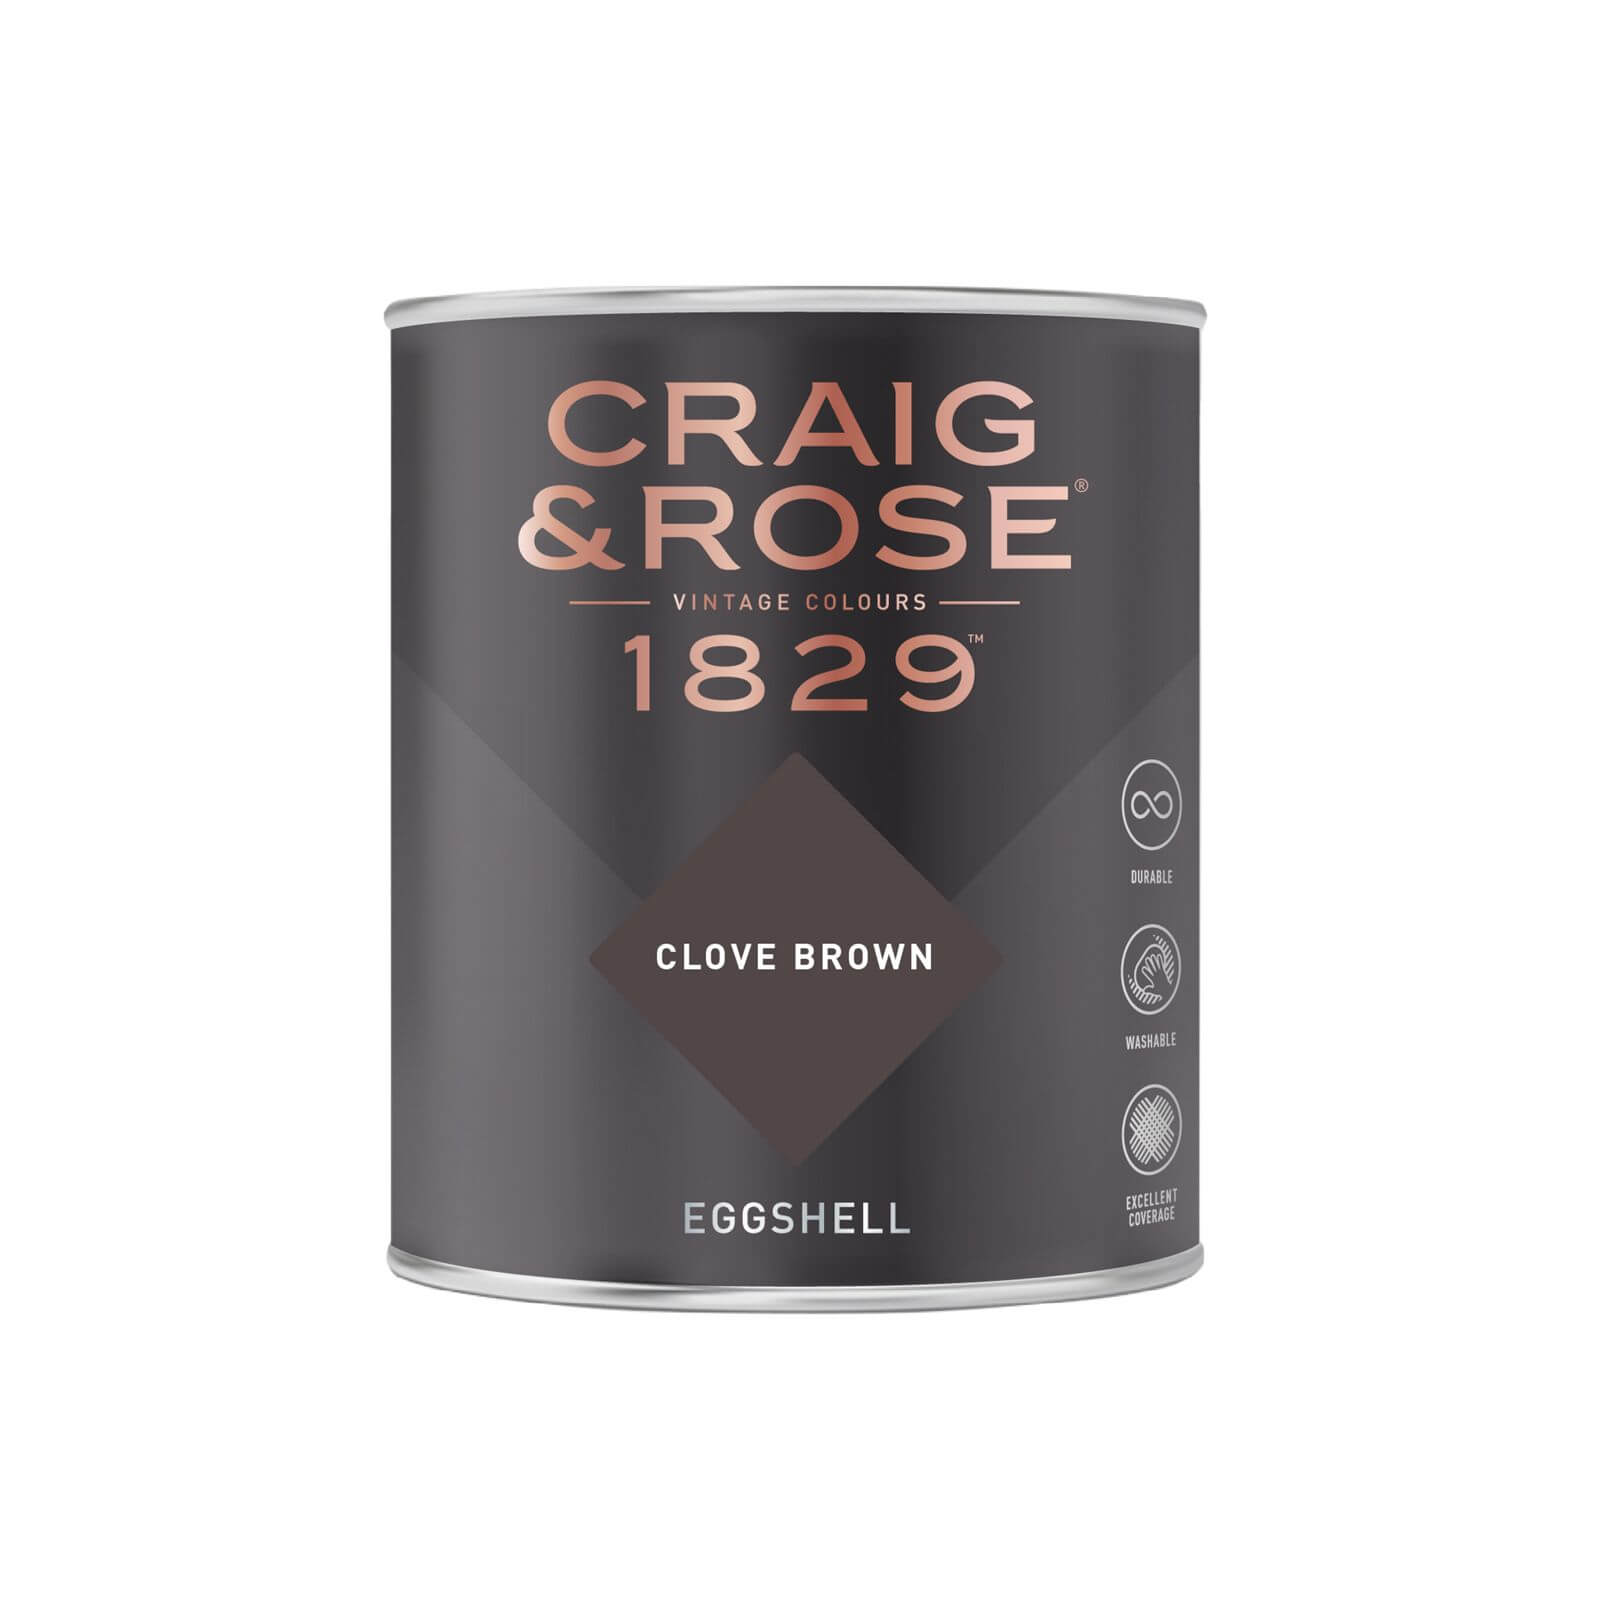 Craig & Rose 1829 Eggshell Paint Clove Brown - 750ml